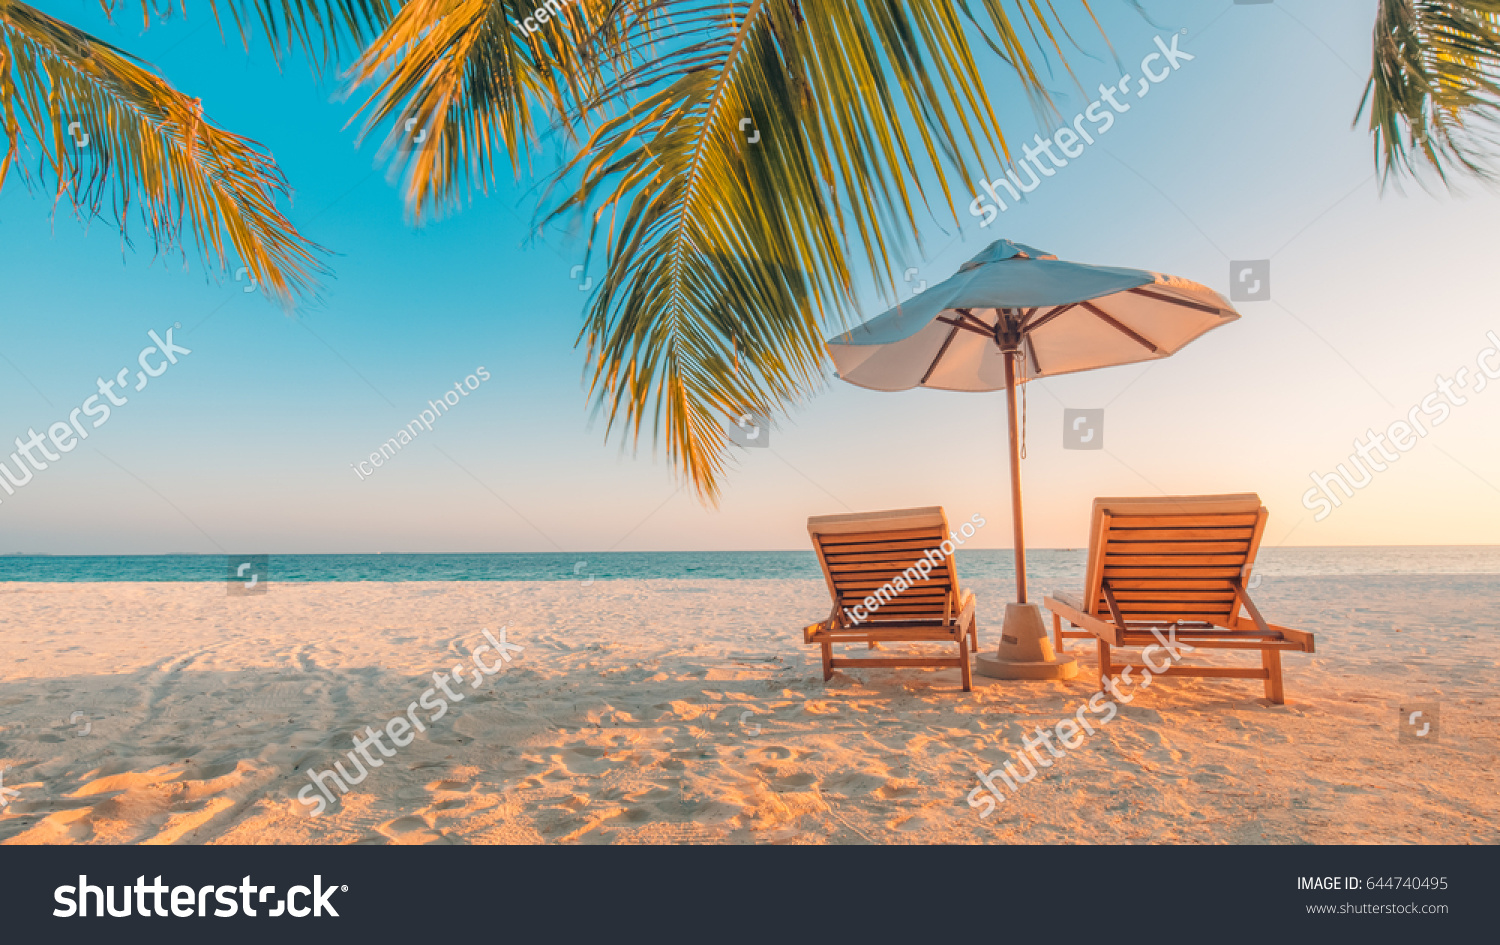 Ruhig Strand Szene. Exotische tropische Strandlandschaft für Hintergrund oder Tapete. Design des Sommerurlaubskonzepts. #644740495